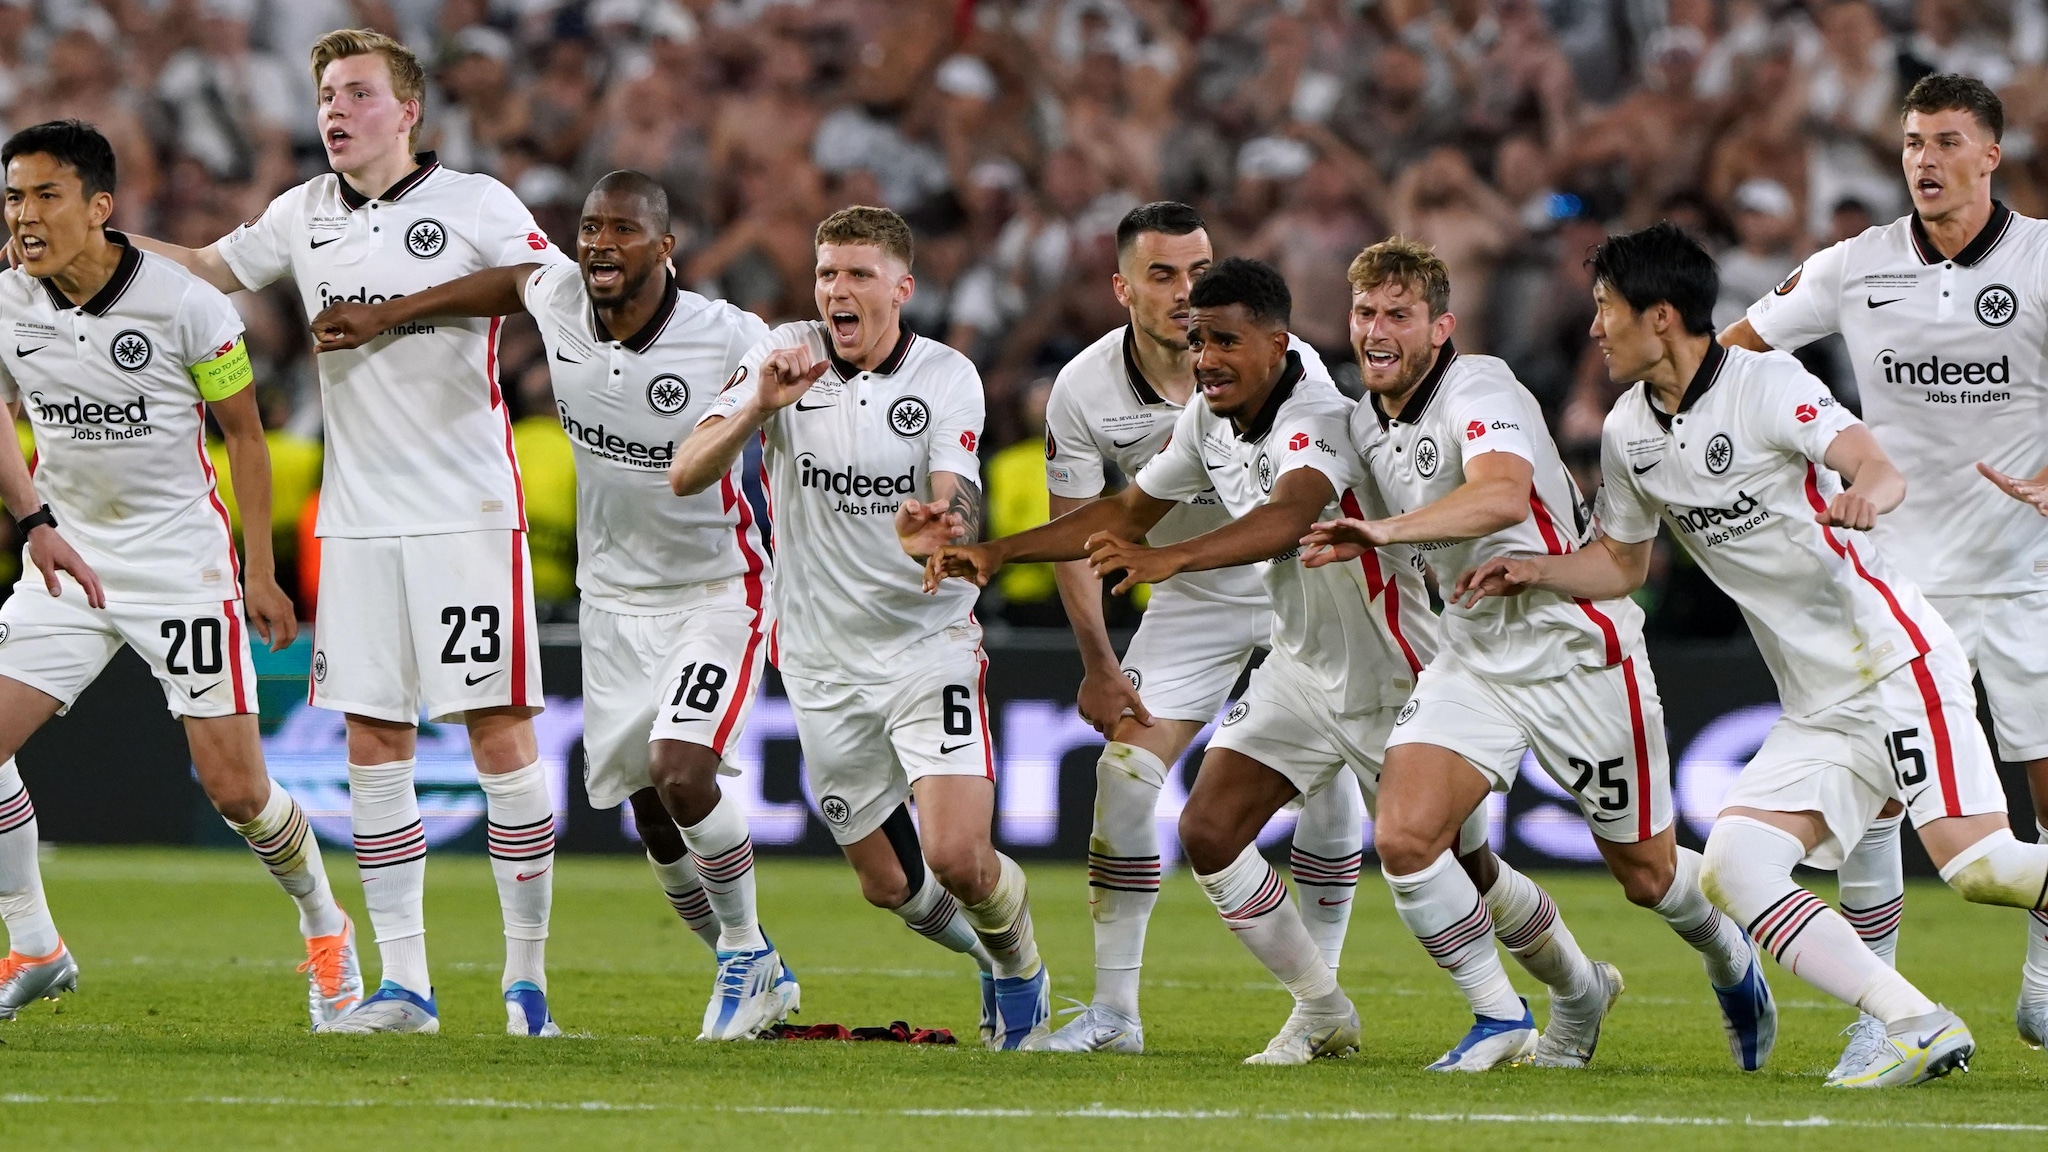 Chuyên gia phân tích trận chung kết Europa League: Frankfurt 5 Rangers 4 trong cả 2 trận